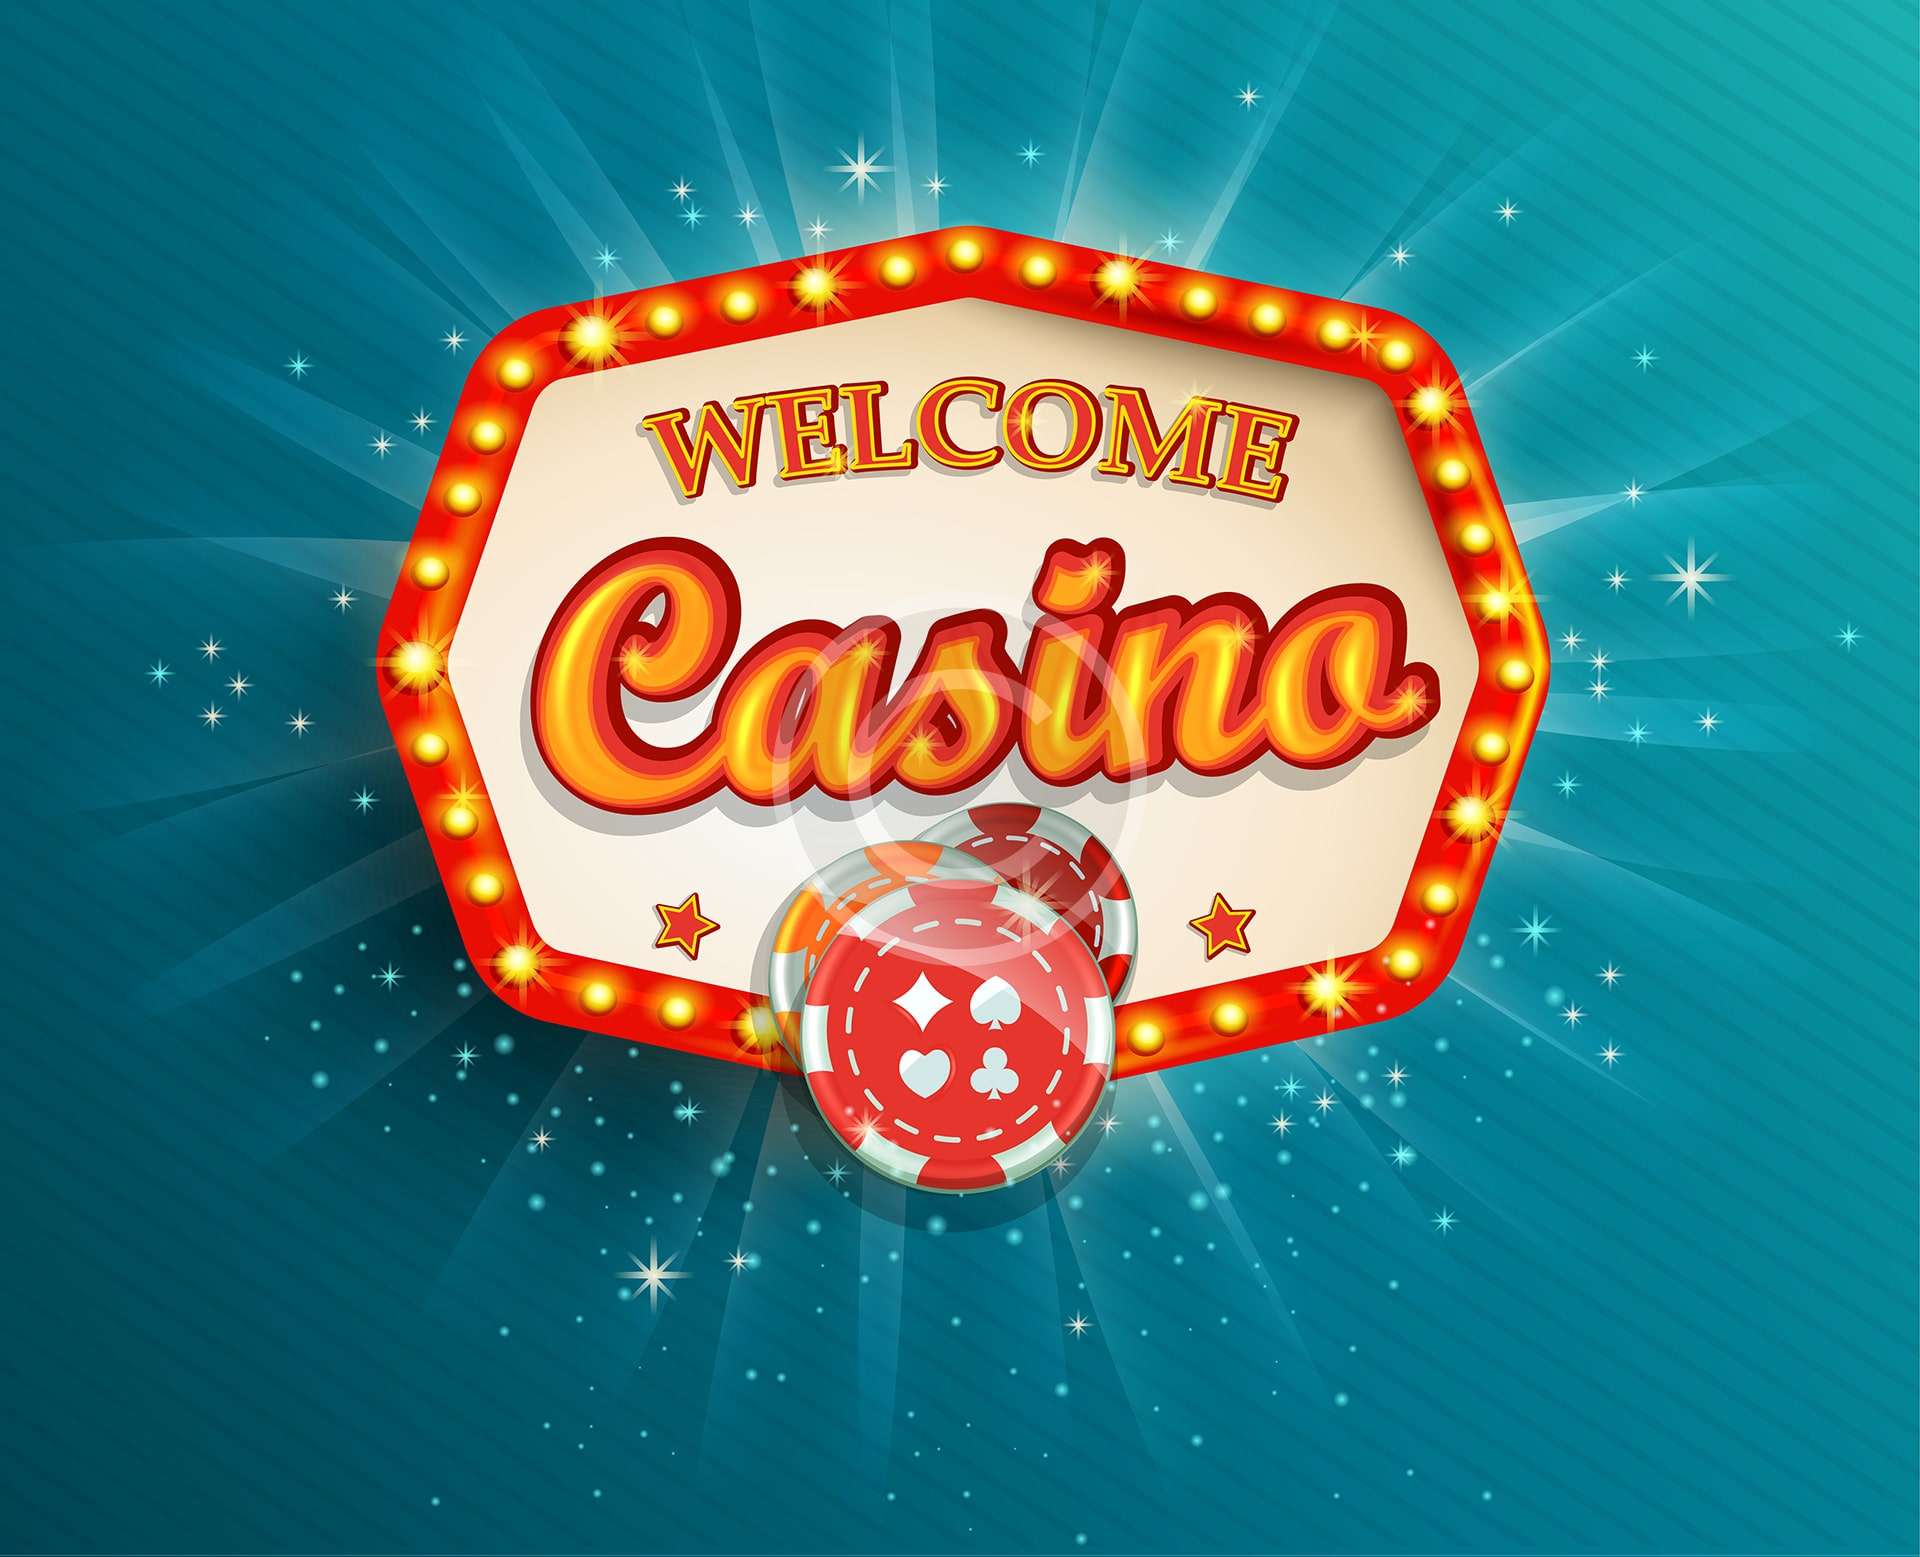 Classic games casino